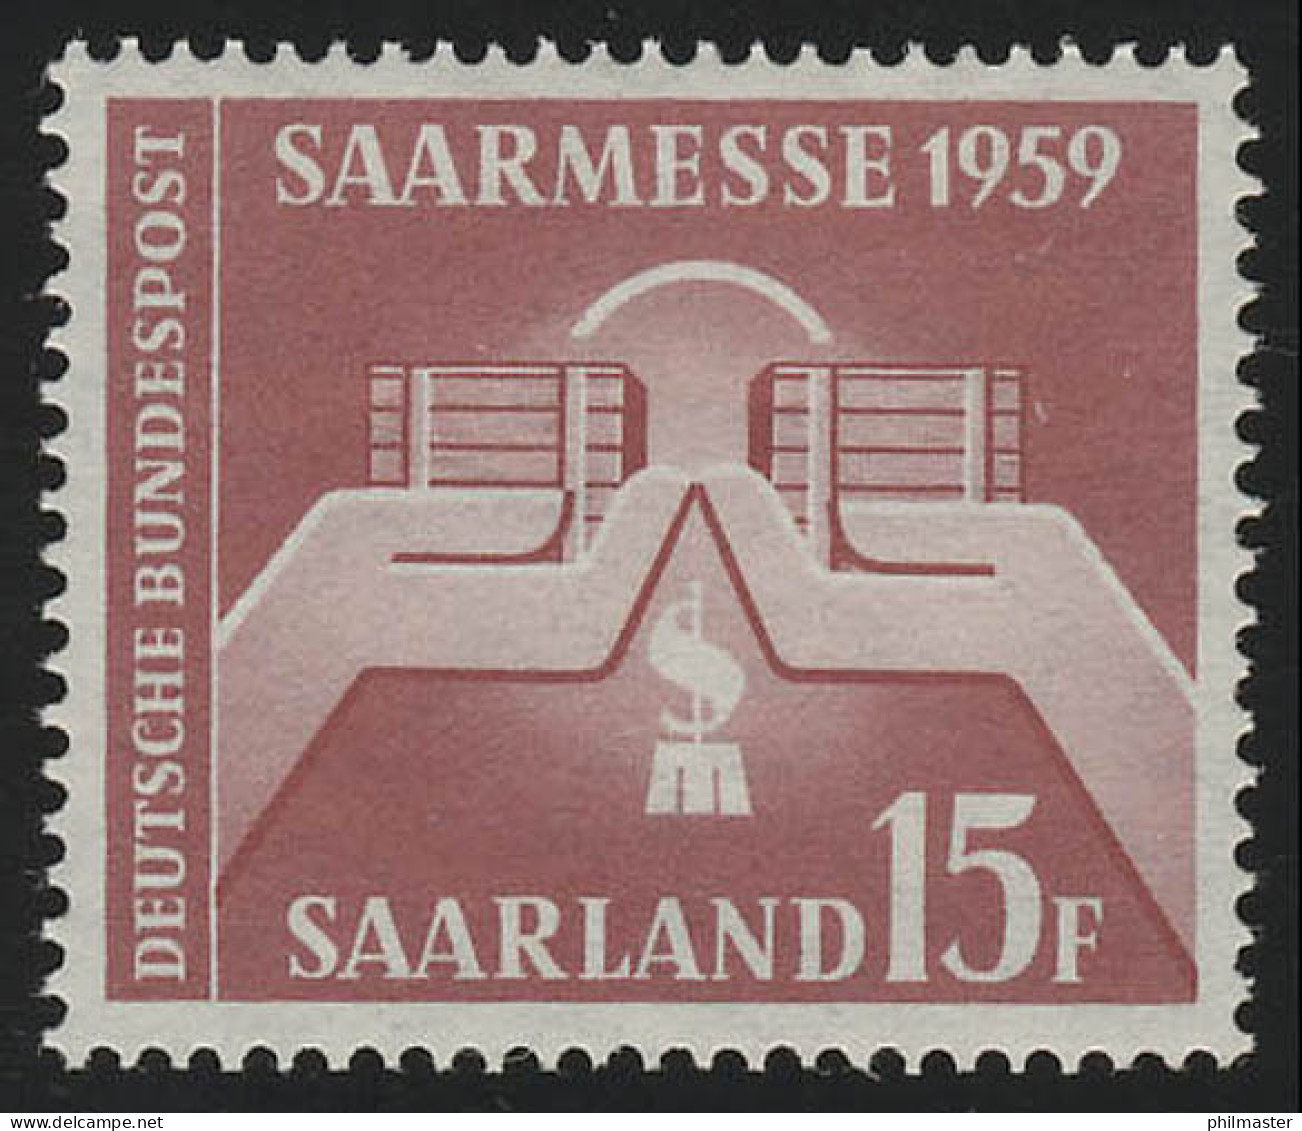 Saarland 447 Saarmesse Saarbrücken 1959, ** - Neufs